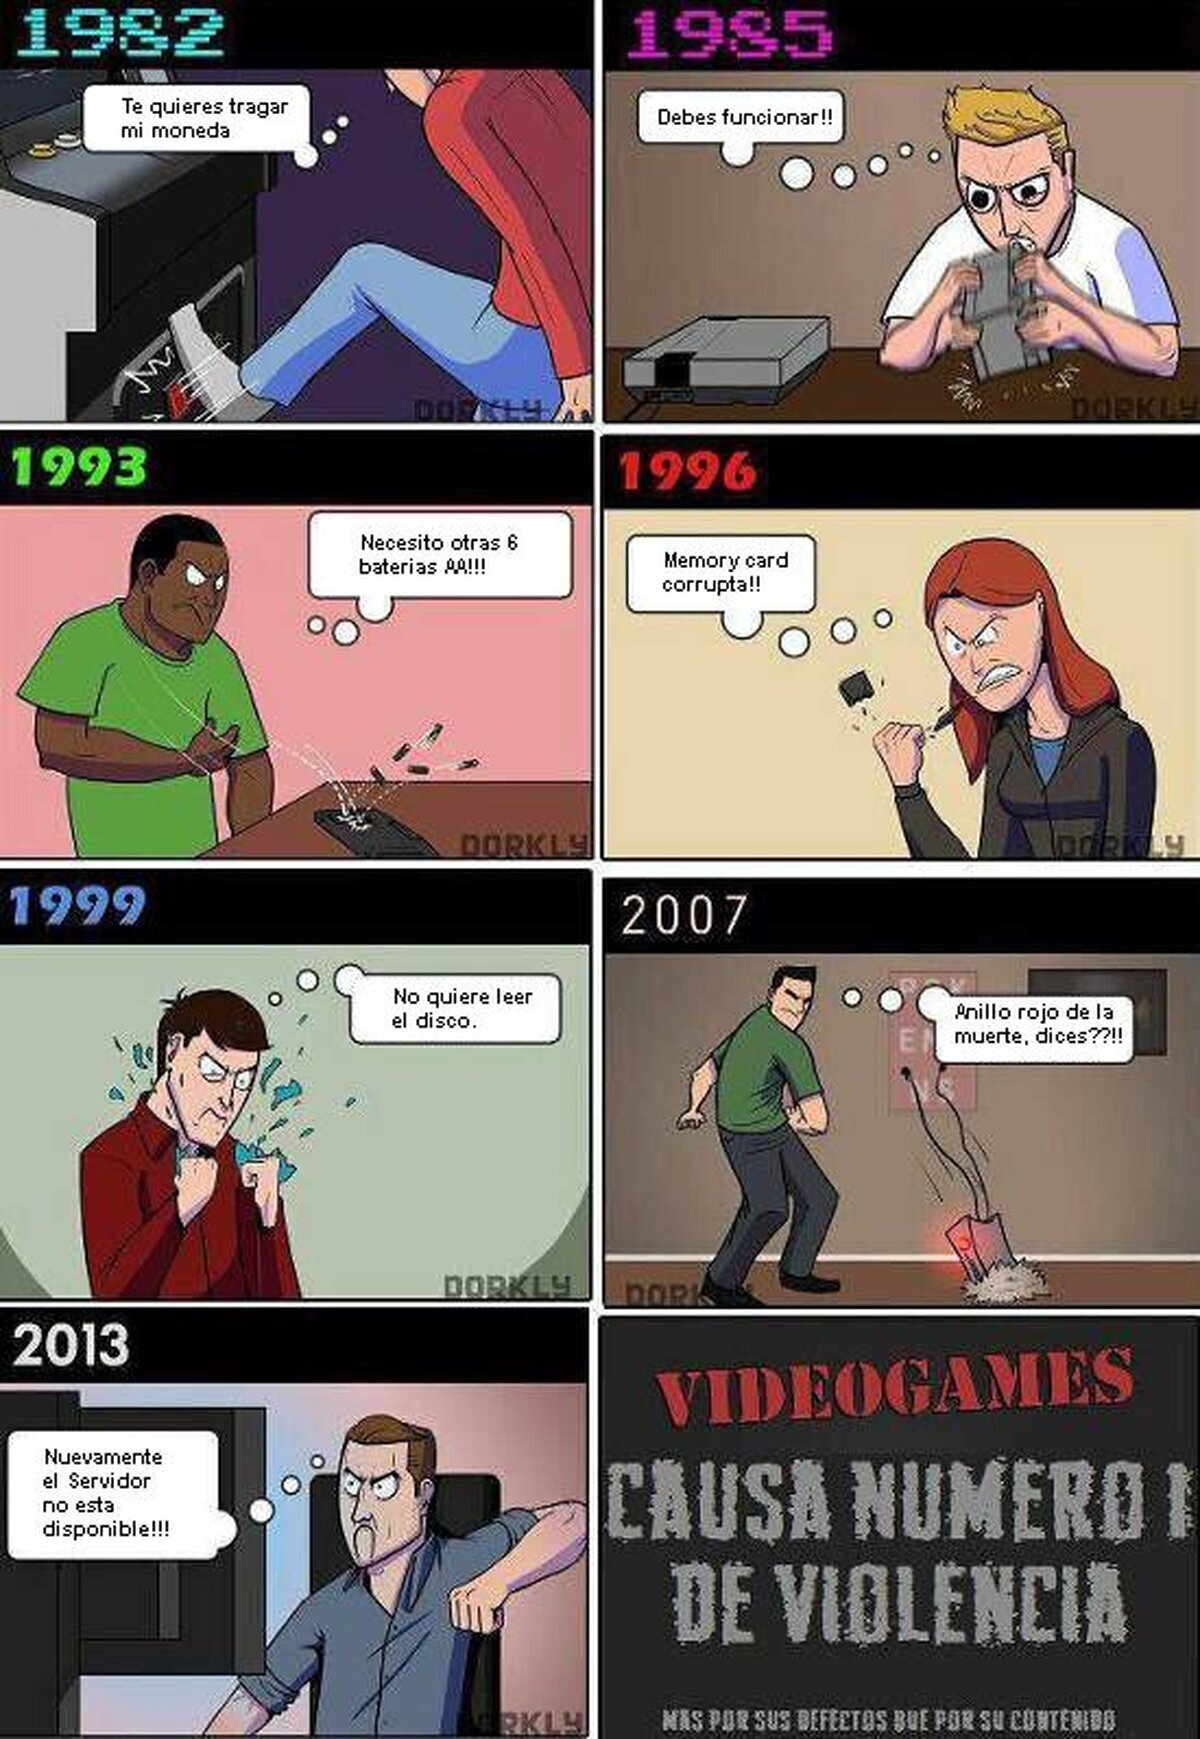 Los videojuegos y la violencia. Por Dorkly